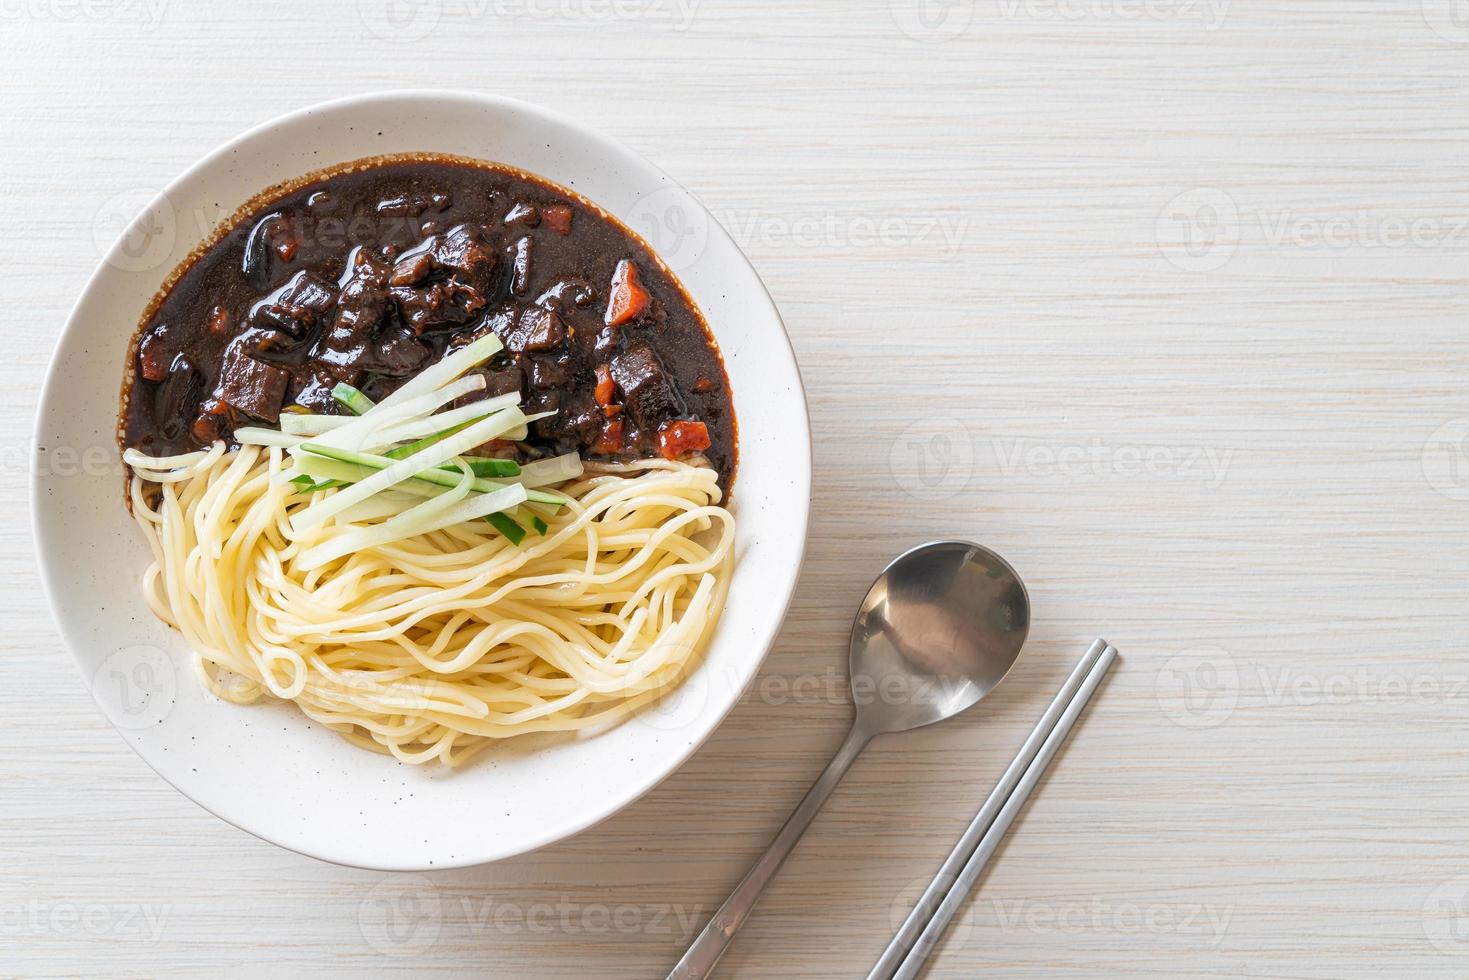 jajangmyeon ou jjajangmyeon est une nouille coréenne à la sauce noire photo